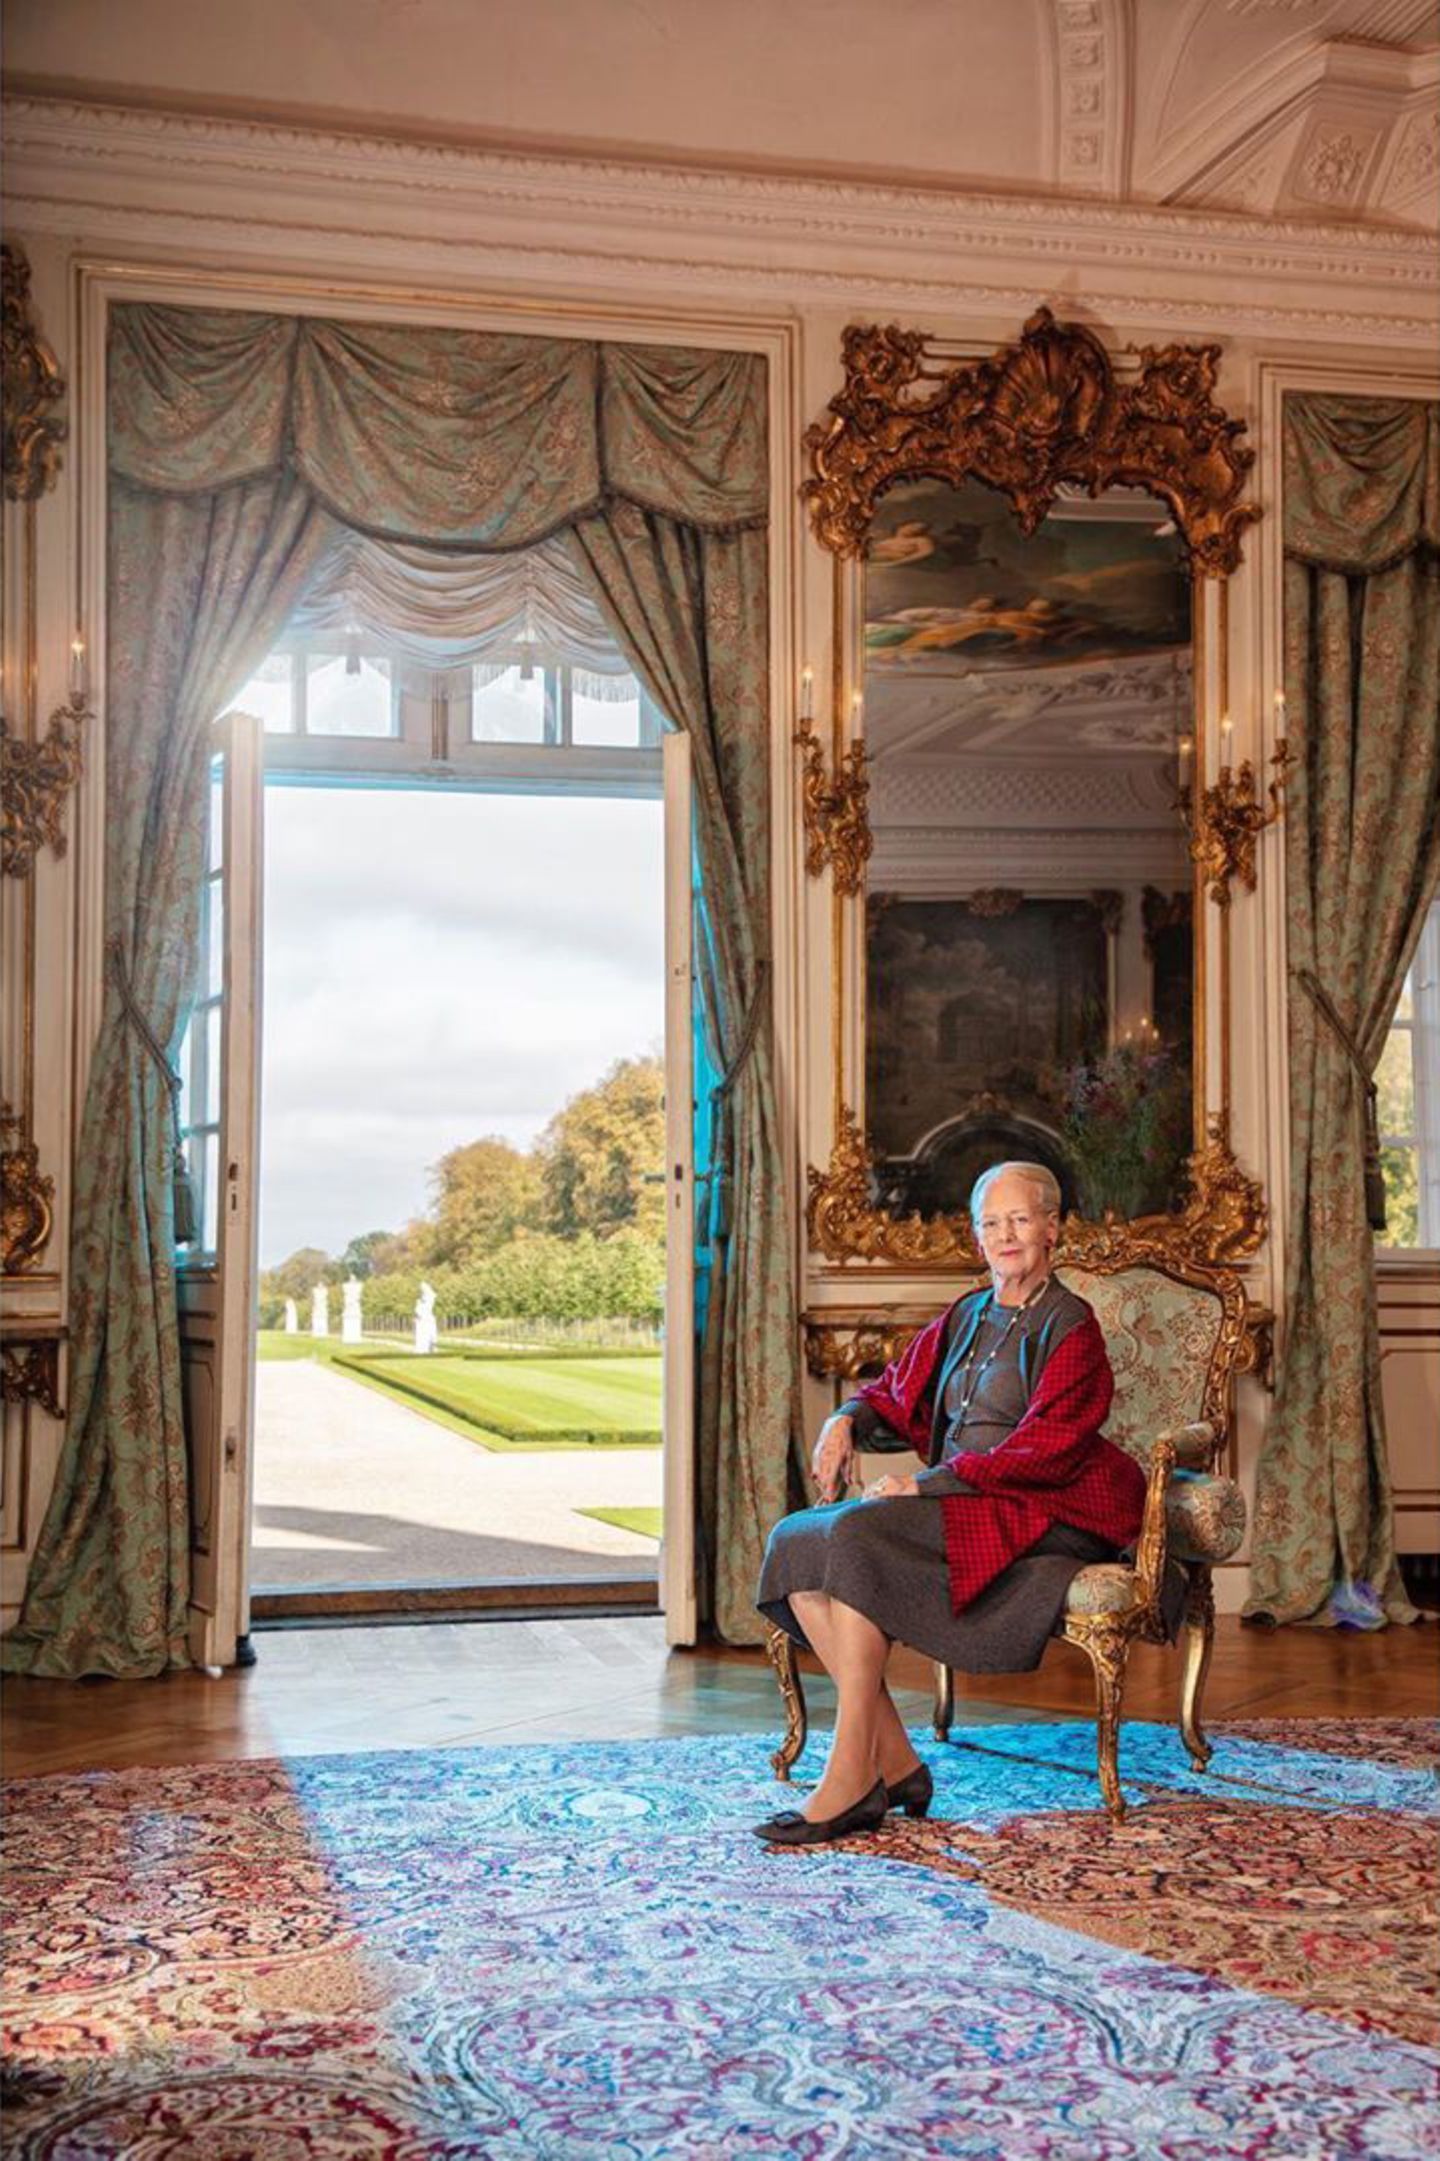 Für diese royale Aufnahme posiert Königin Margrethe in der Gartenhalle des Schlosses Fredensborg, die in der 300-jährigen Geschichte des Palastes den Rahmen für eine Reihe von Porträts der königlichen Familie bildet.